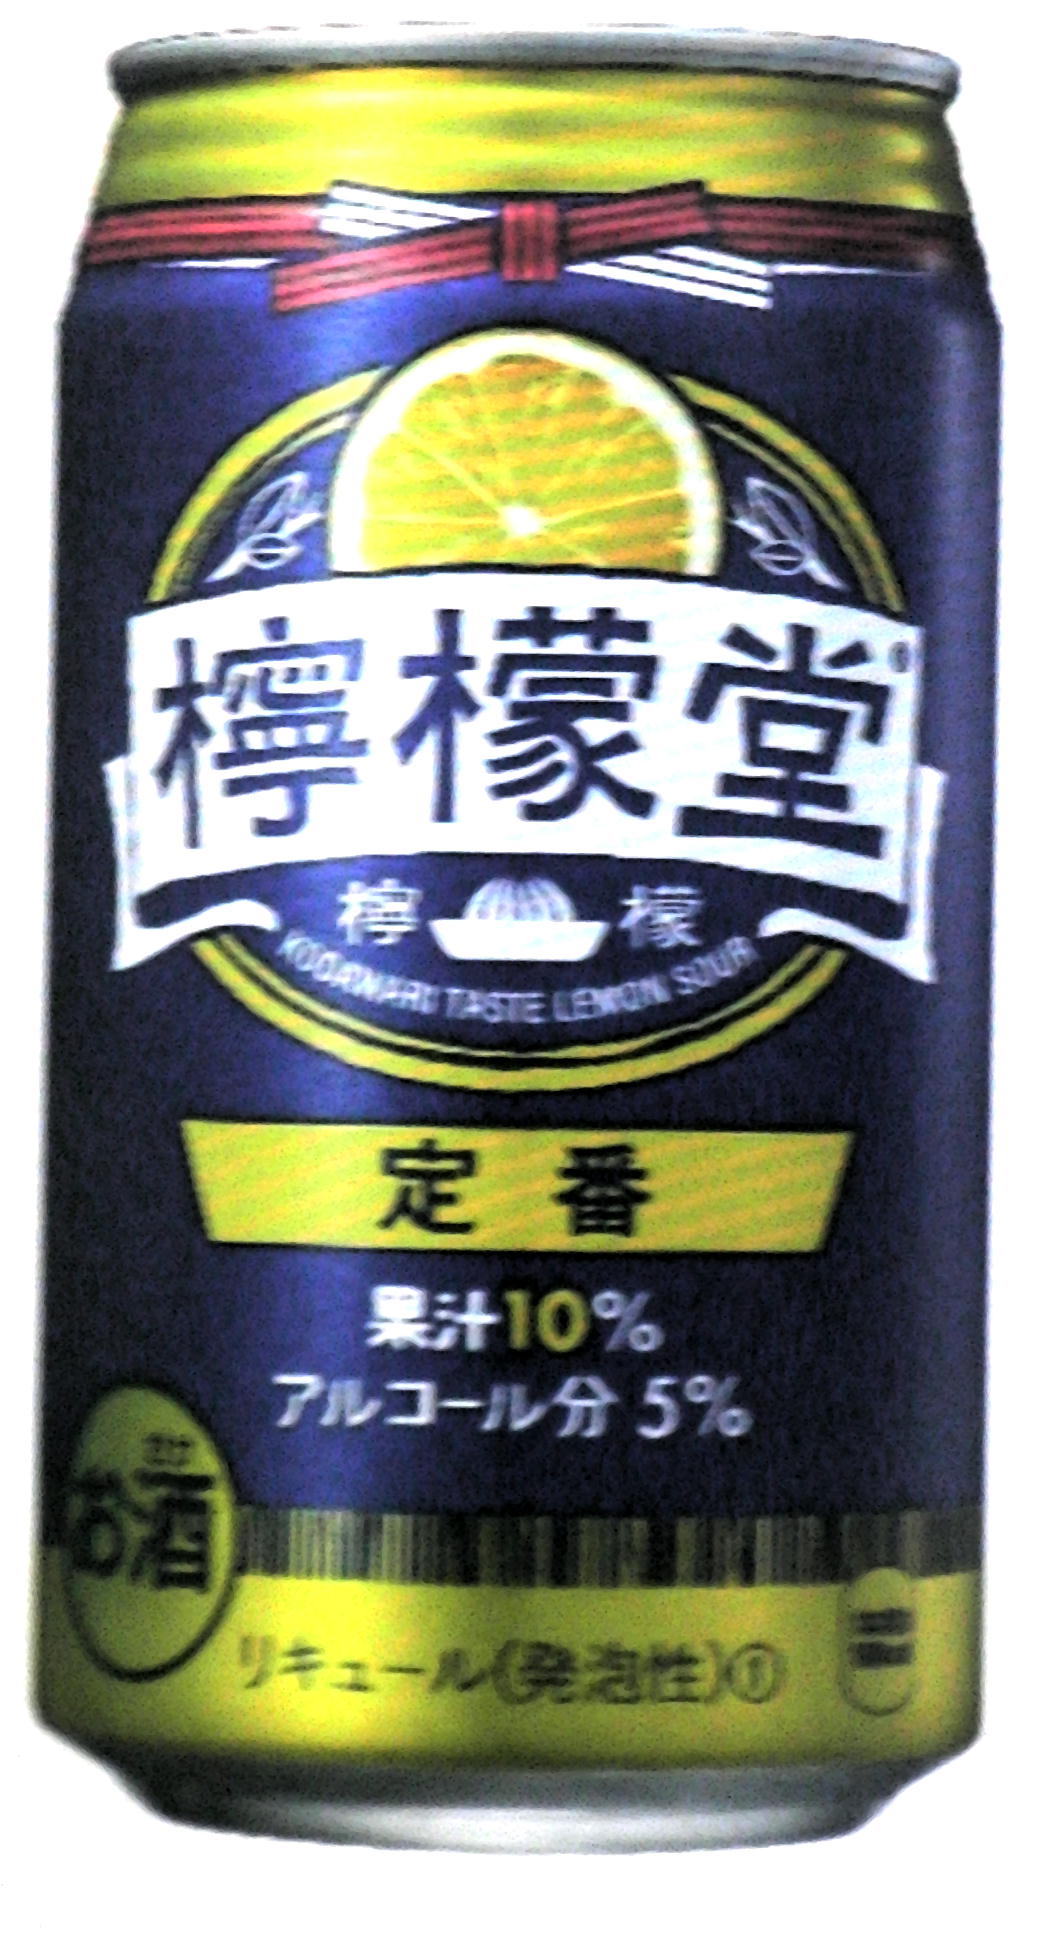 コカ・コーラ「檸檬堂 定番レモン」5度、350ml缶×1本